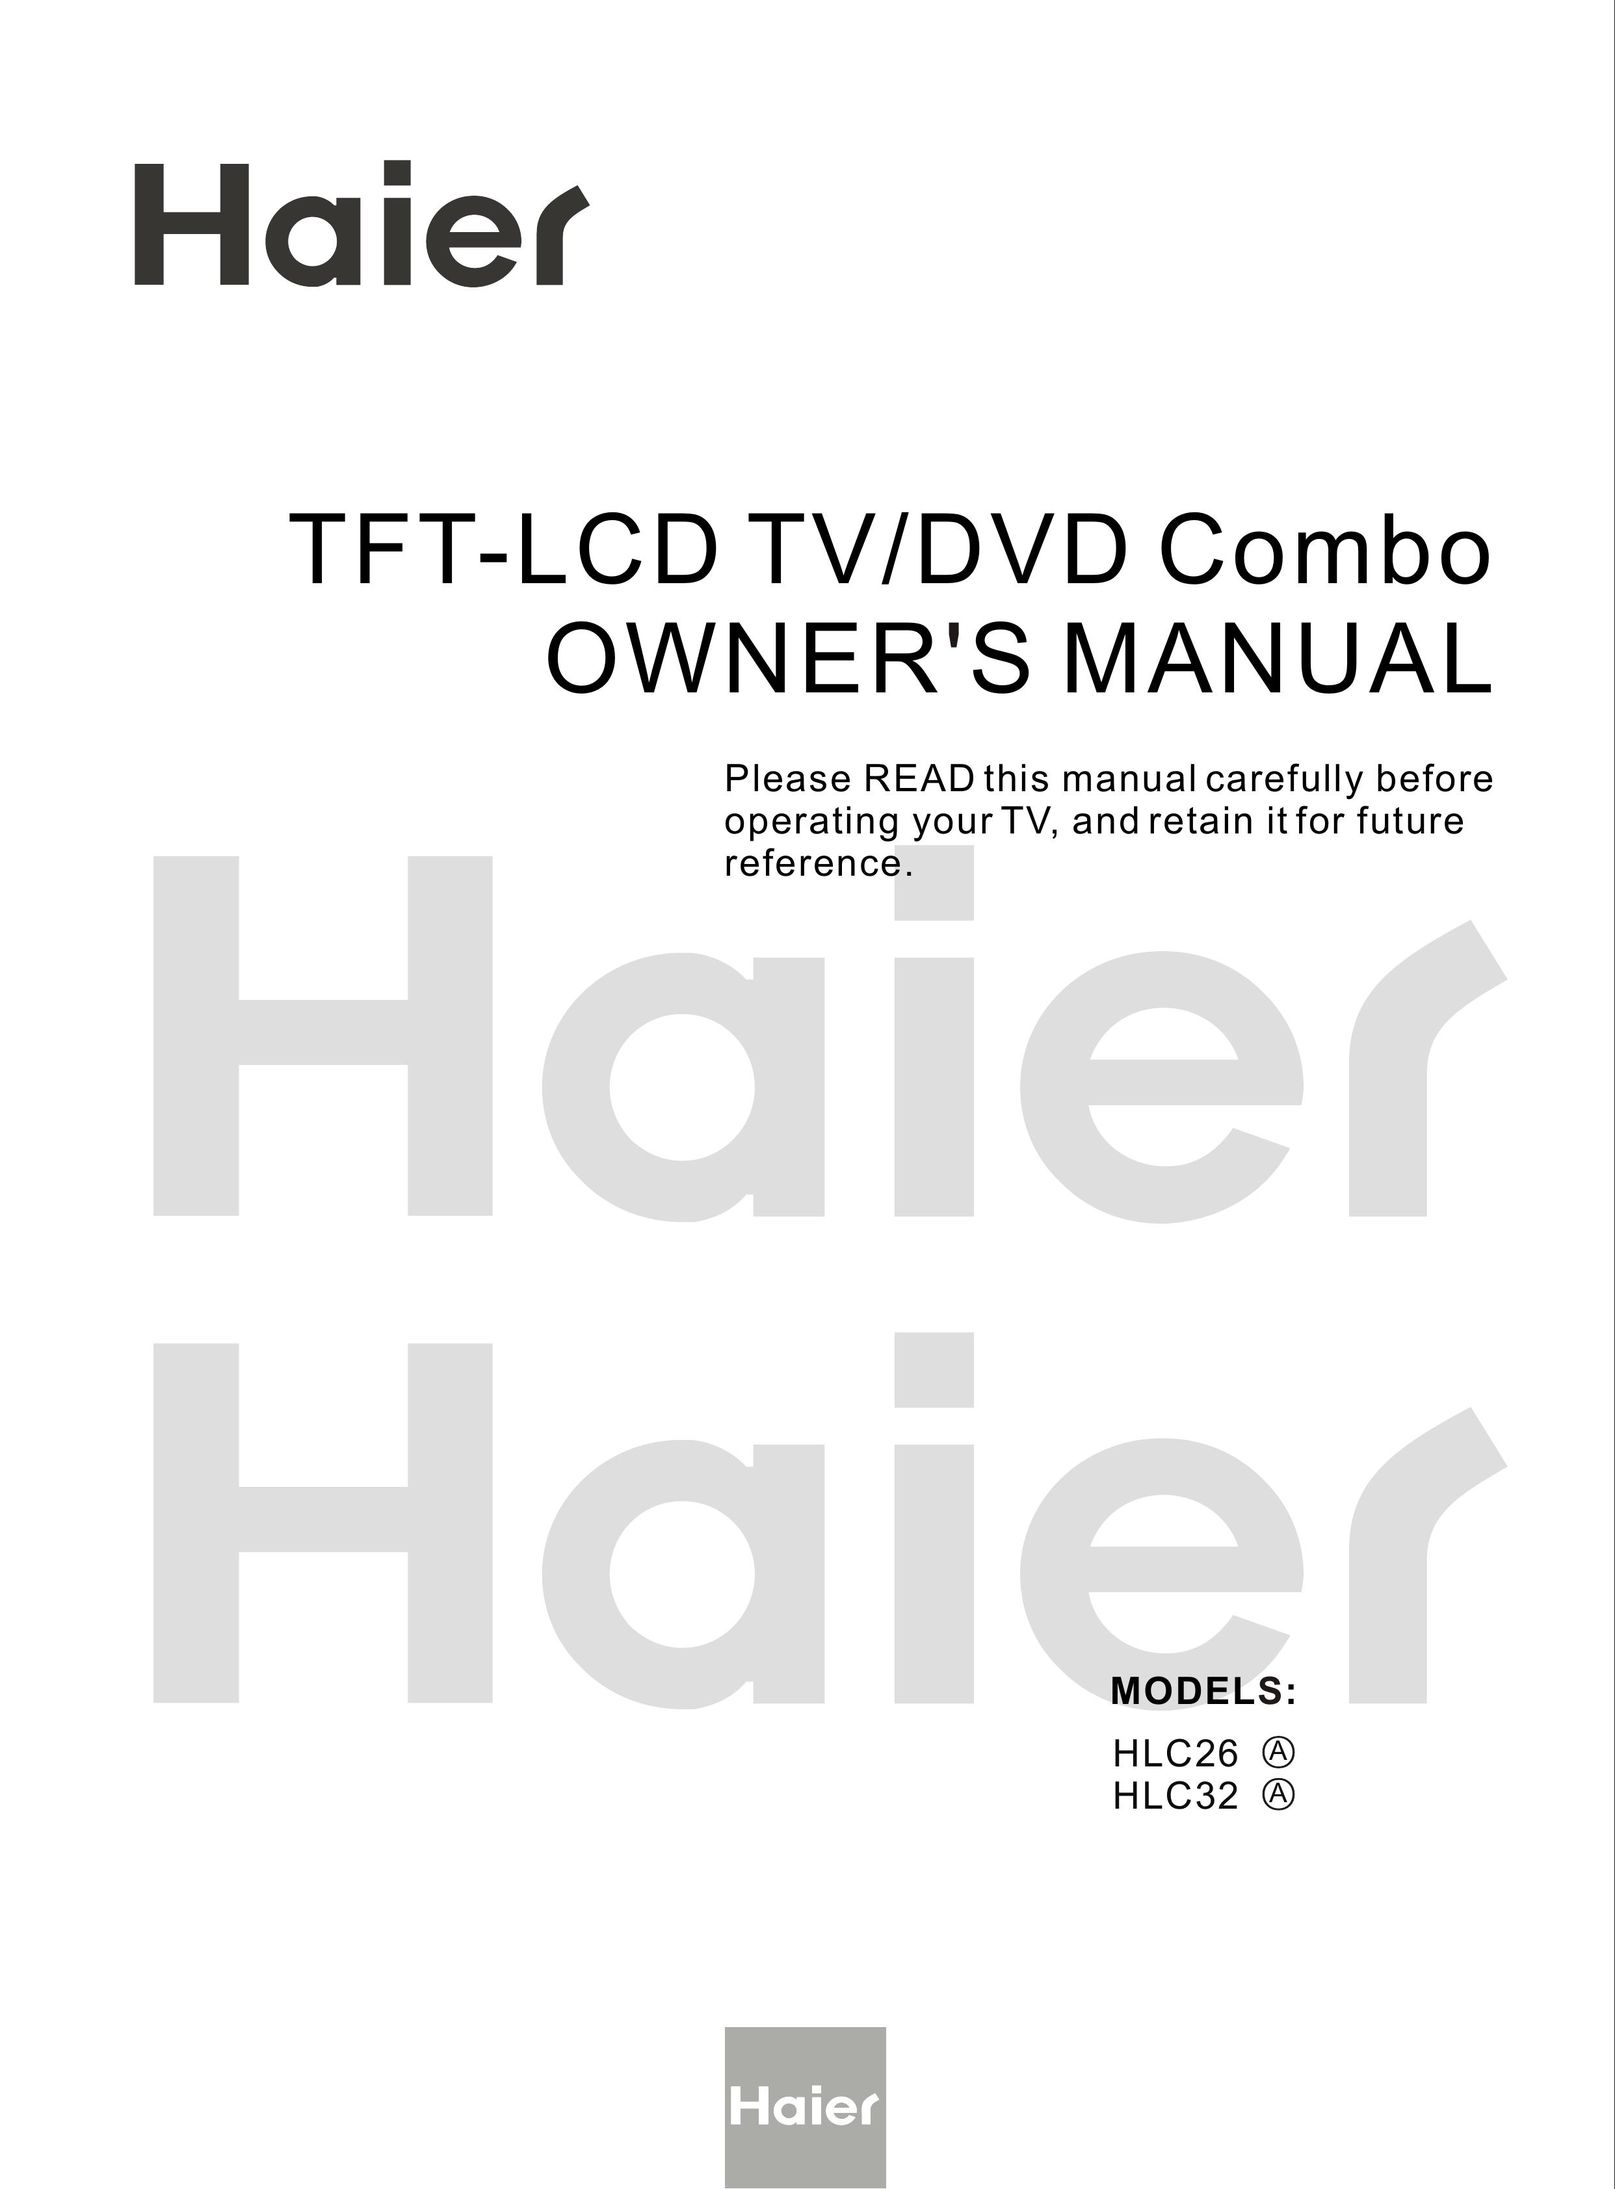 Haier HLC26 TV DVD Combo User Manual